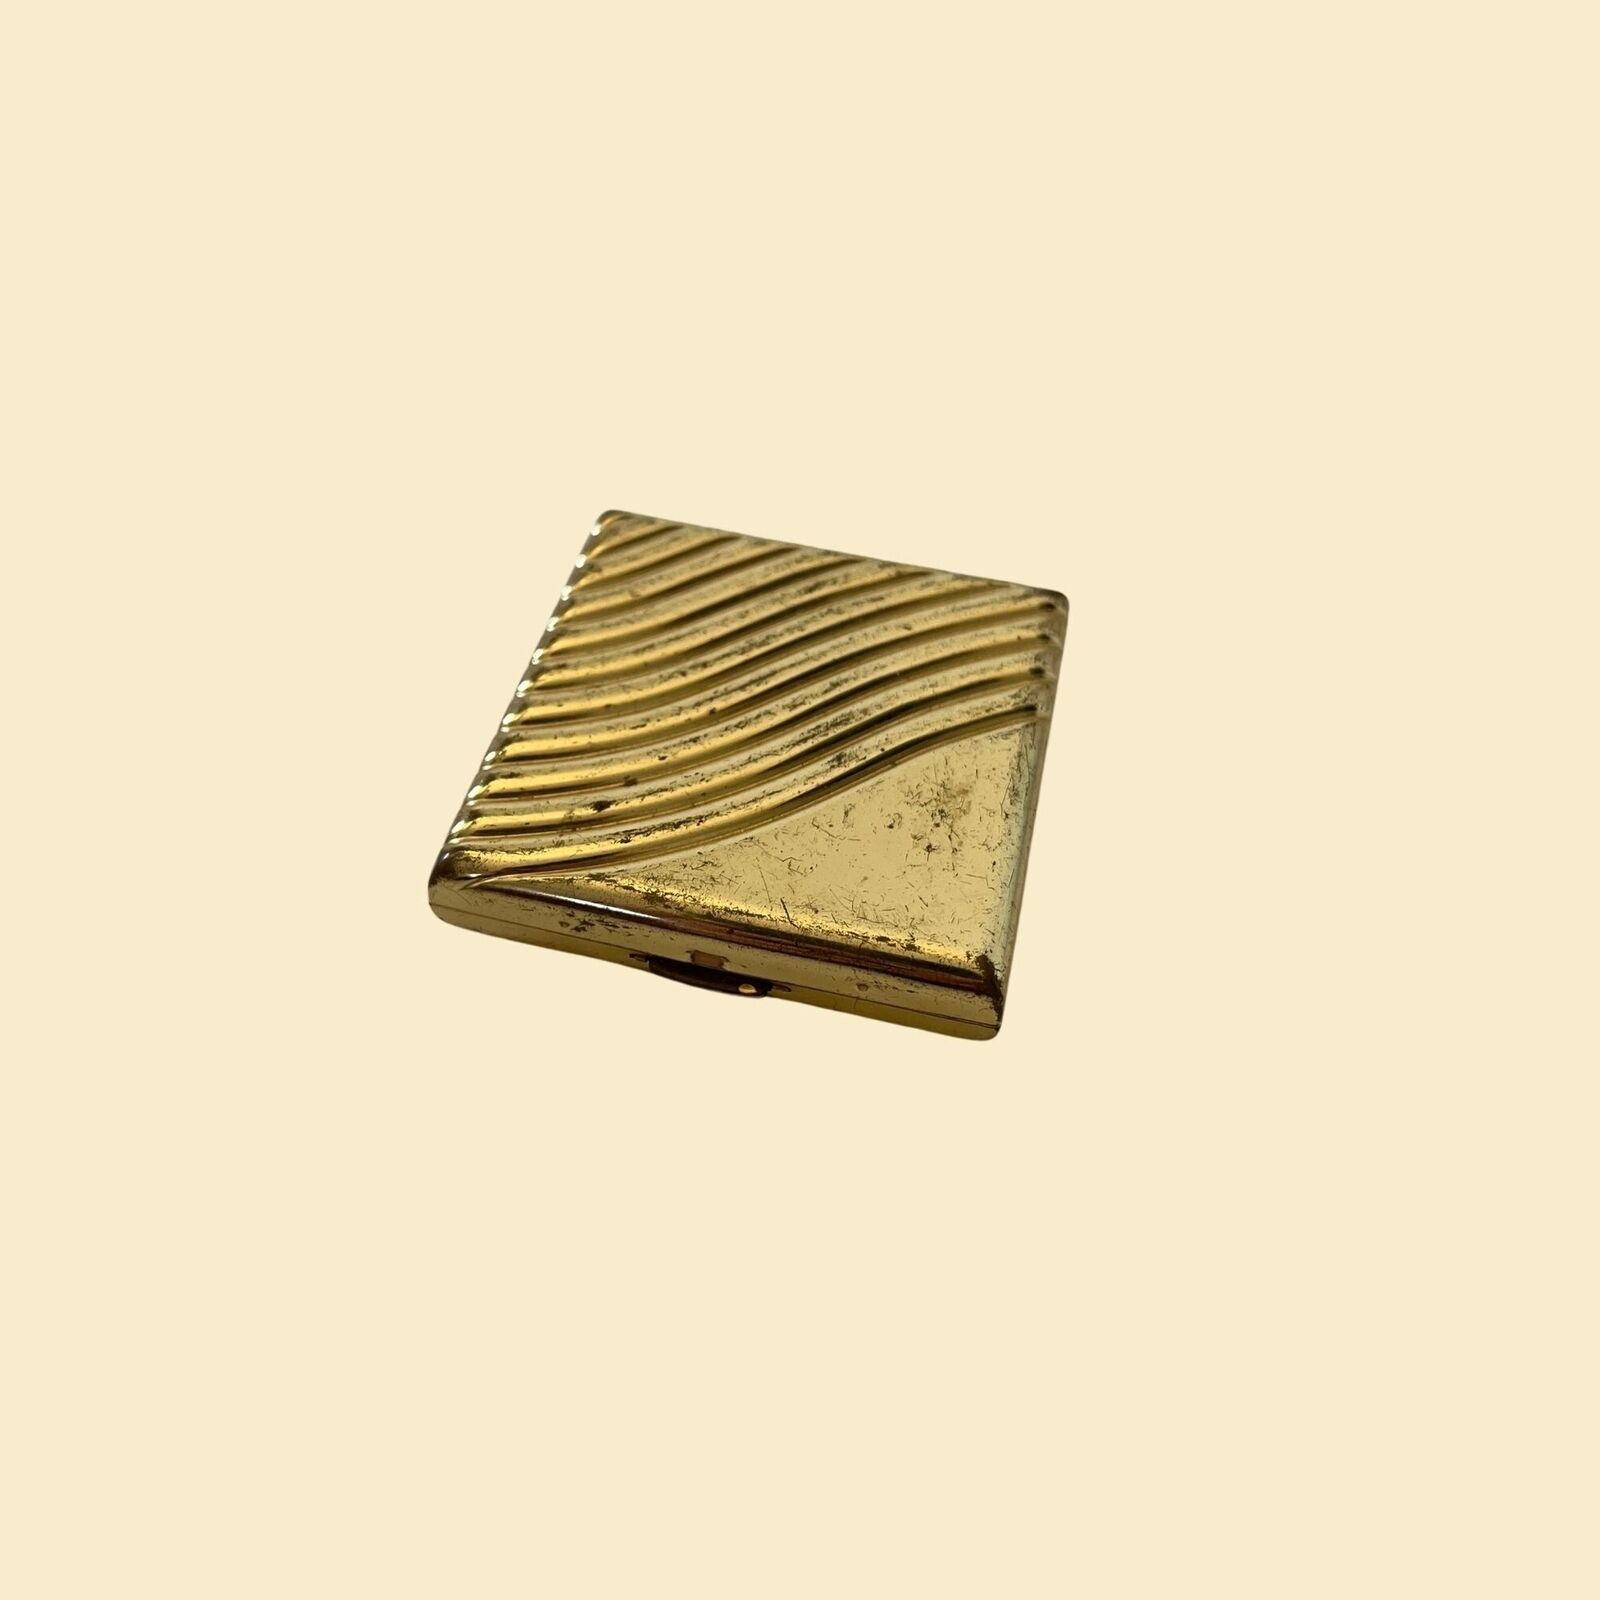 1950s Estée Lauder compact, vintage 50s brass/gold colored square makeup compact